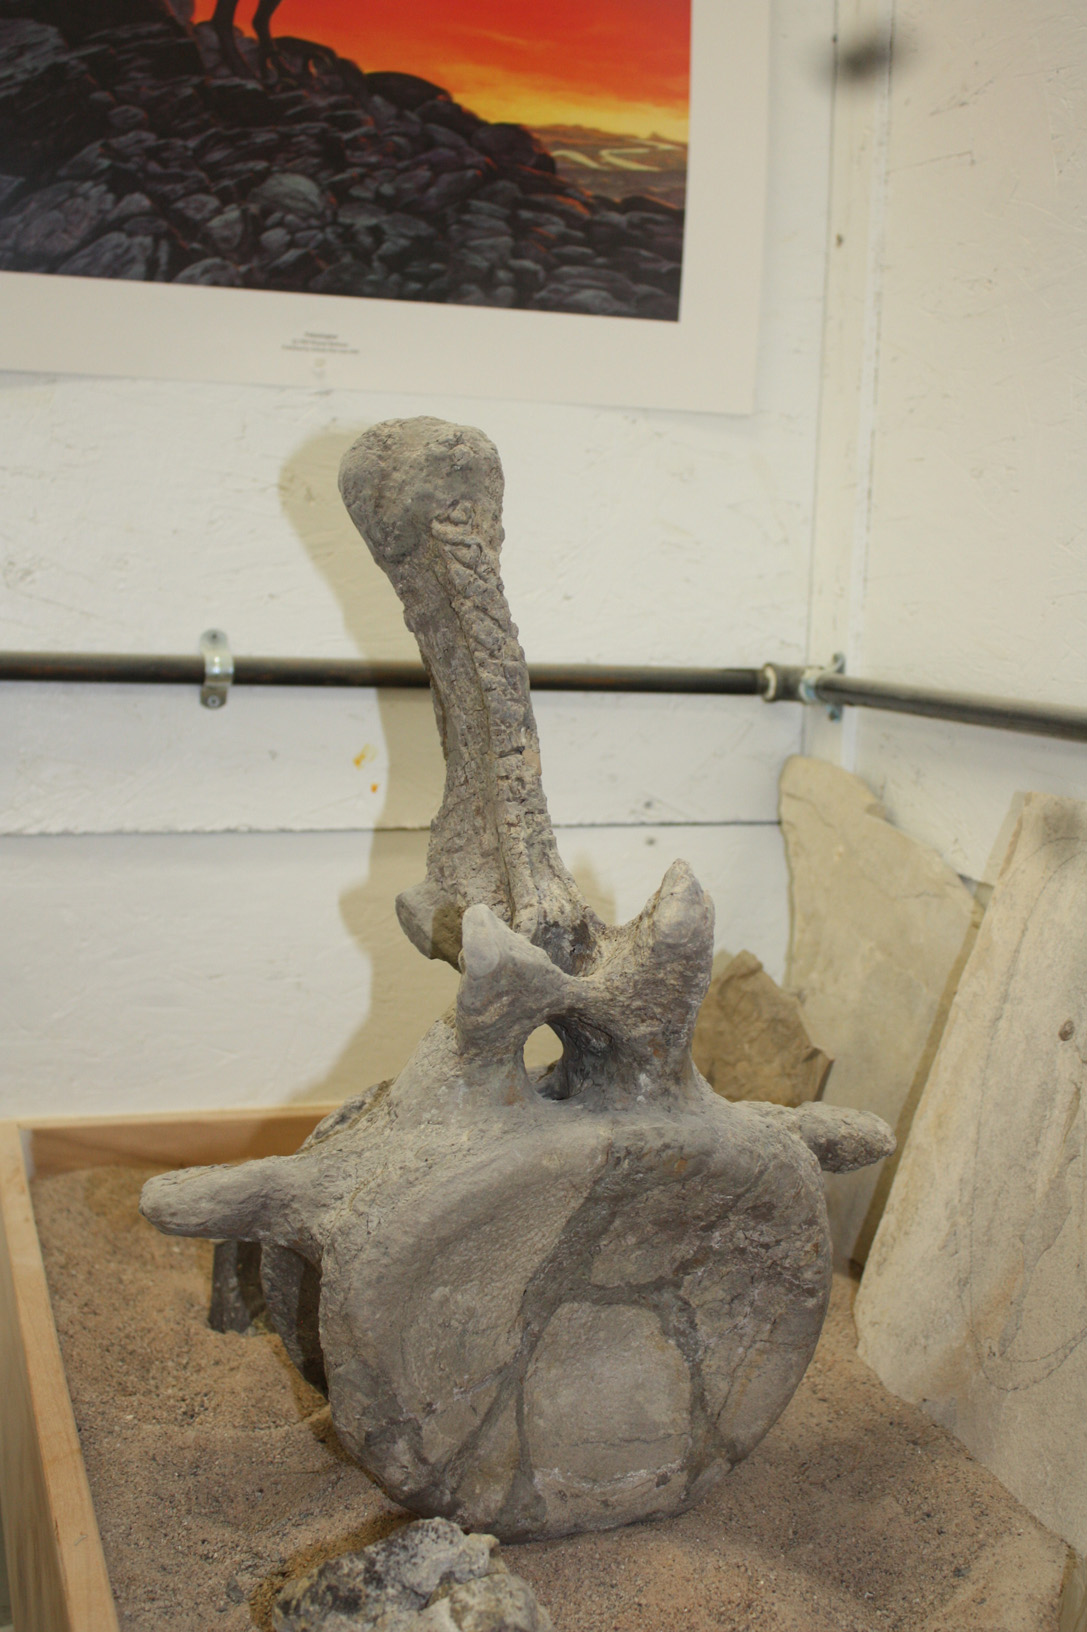 Reconstruction of Apatosaurus caudal vertebrae